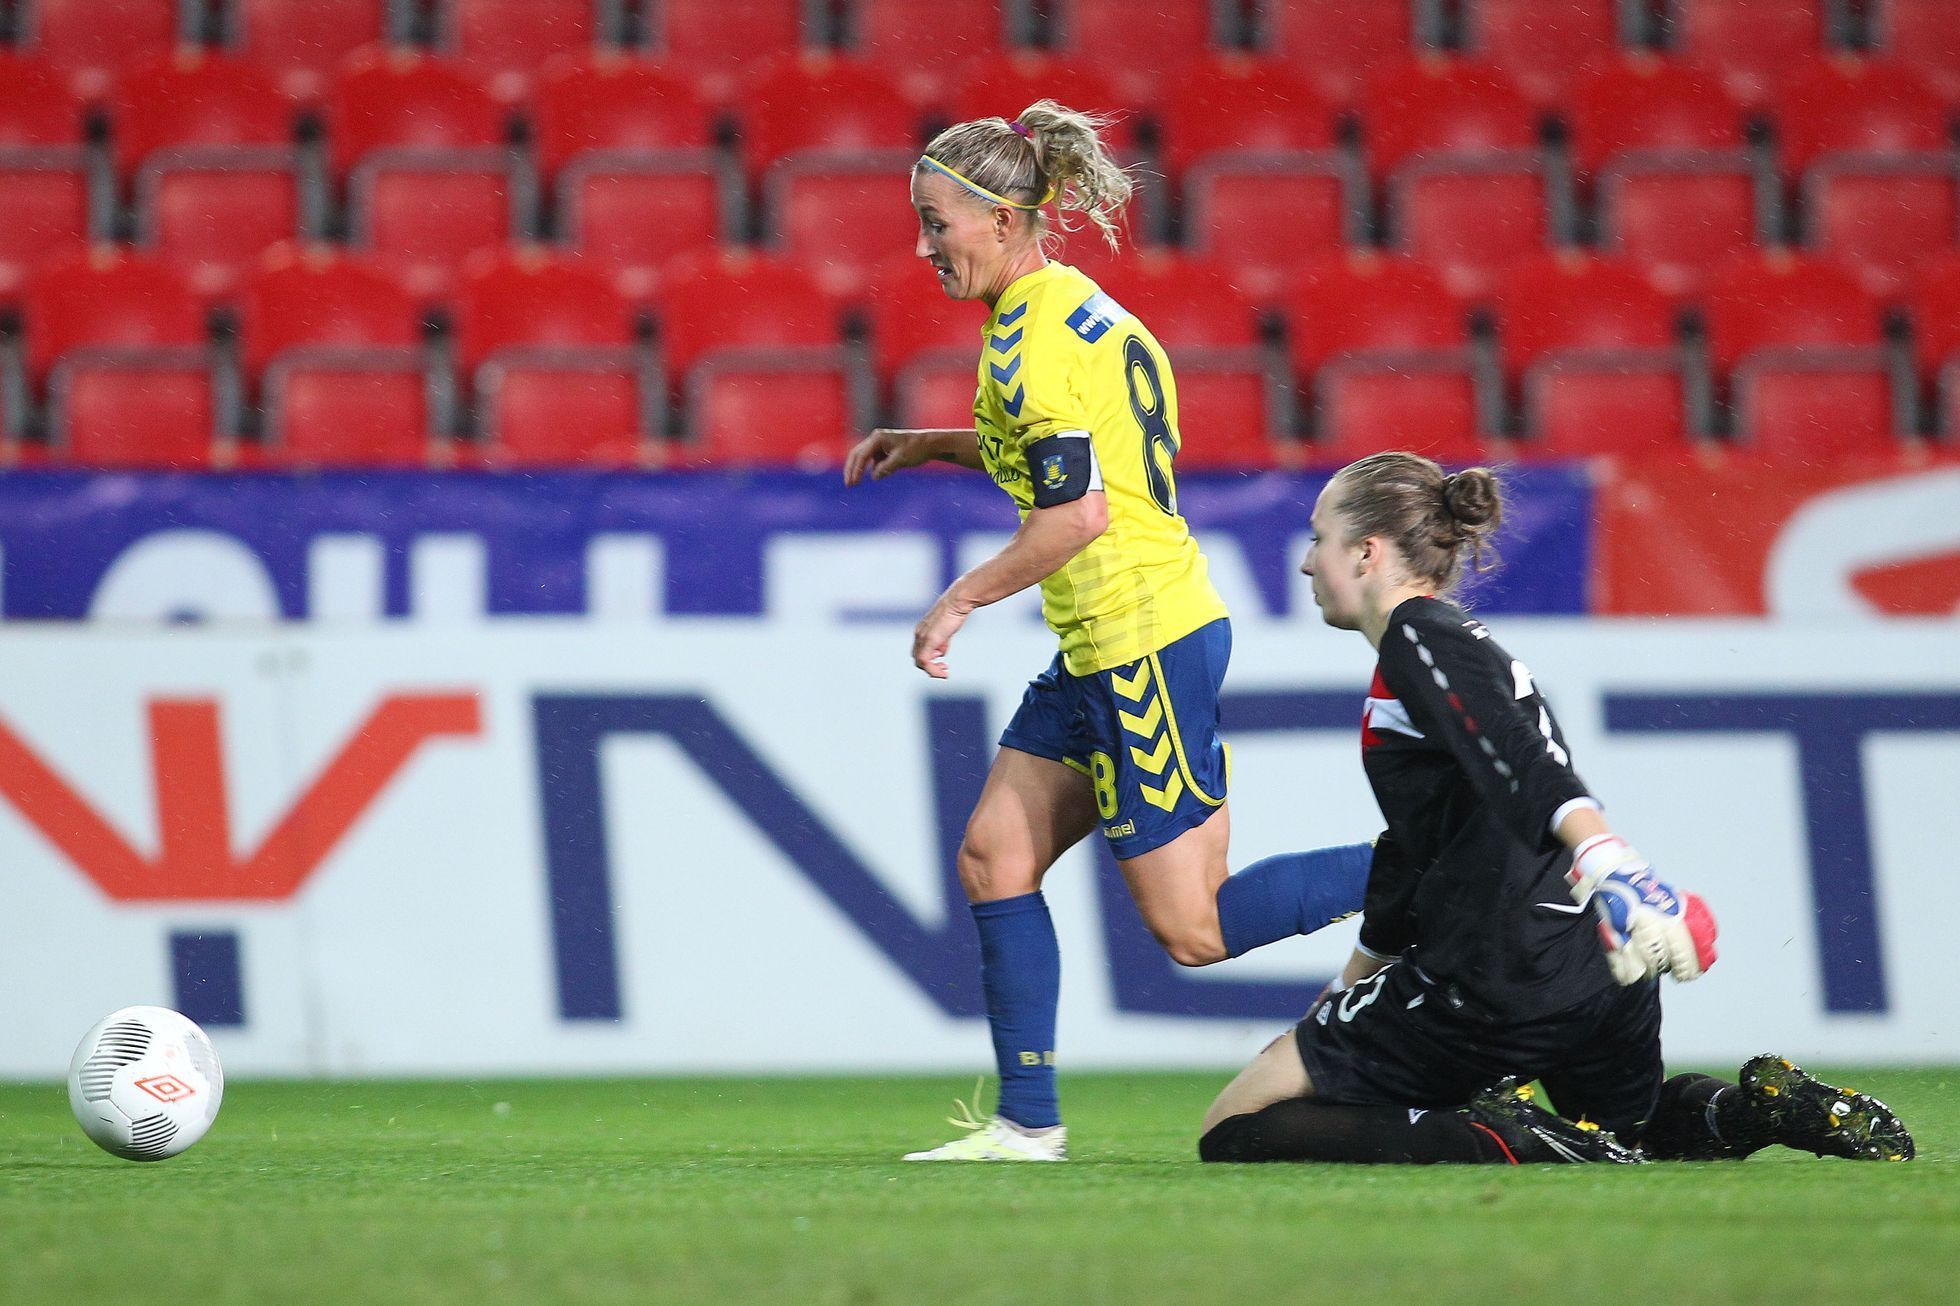 Liga mistrů žen: Slavia - Bröndby